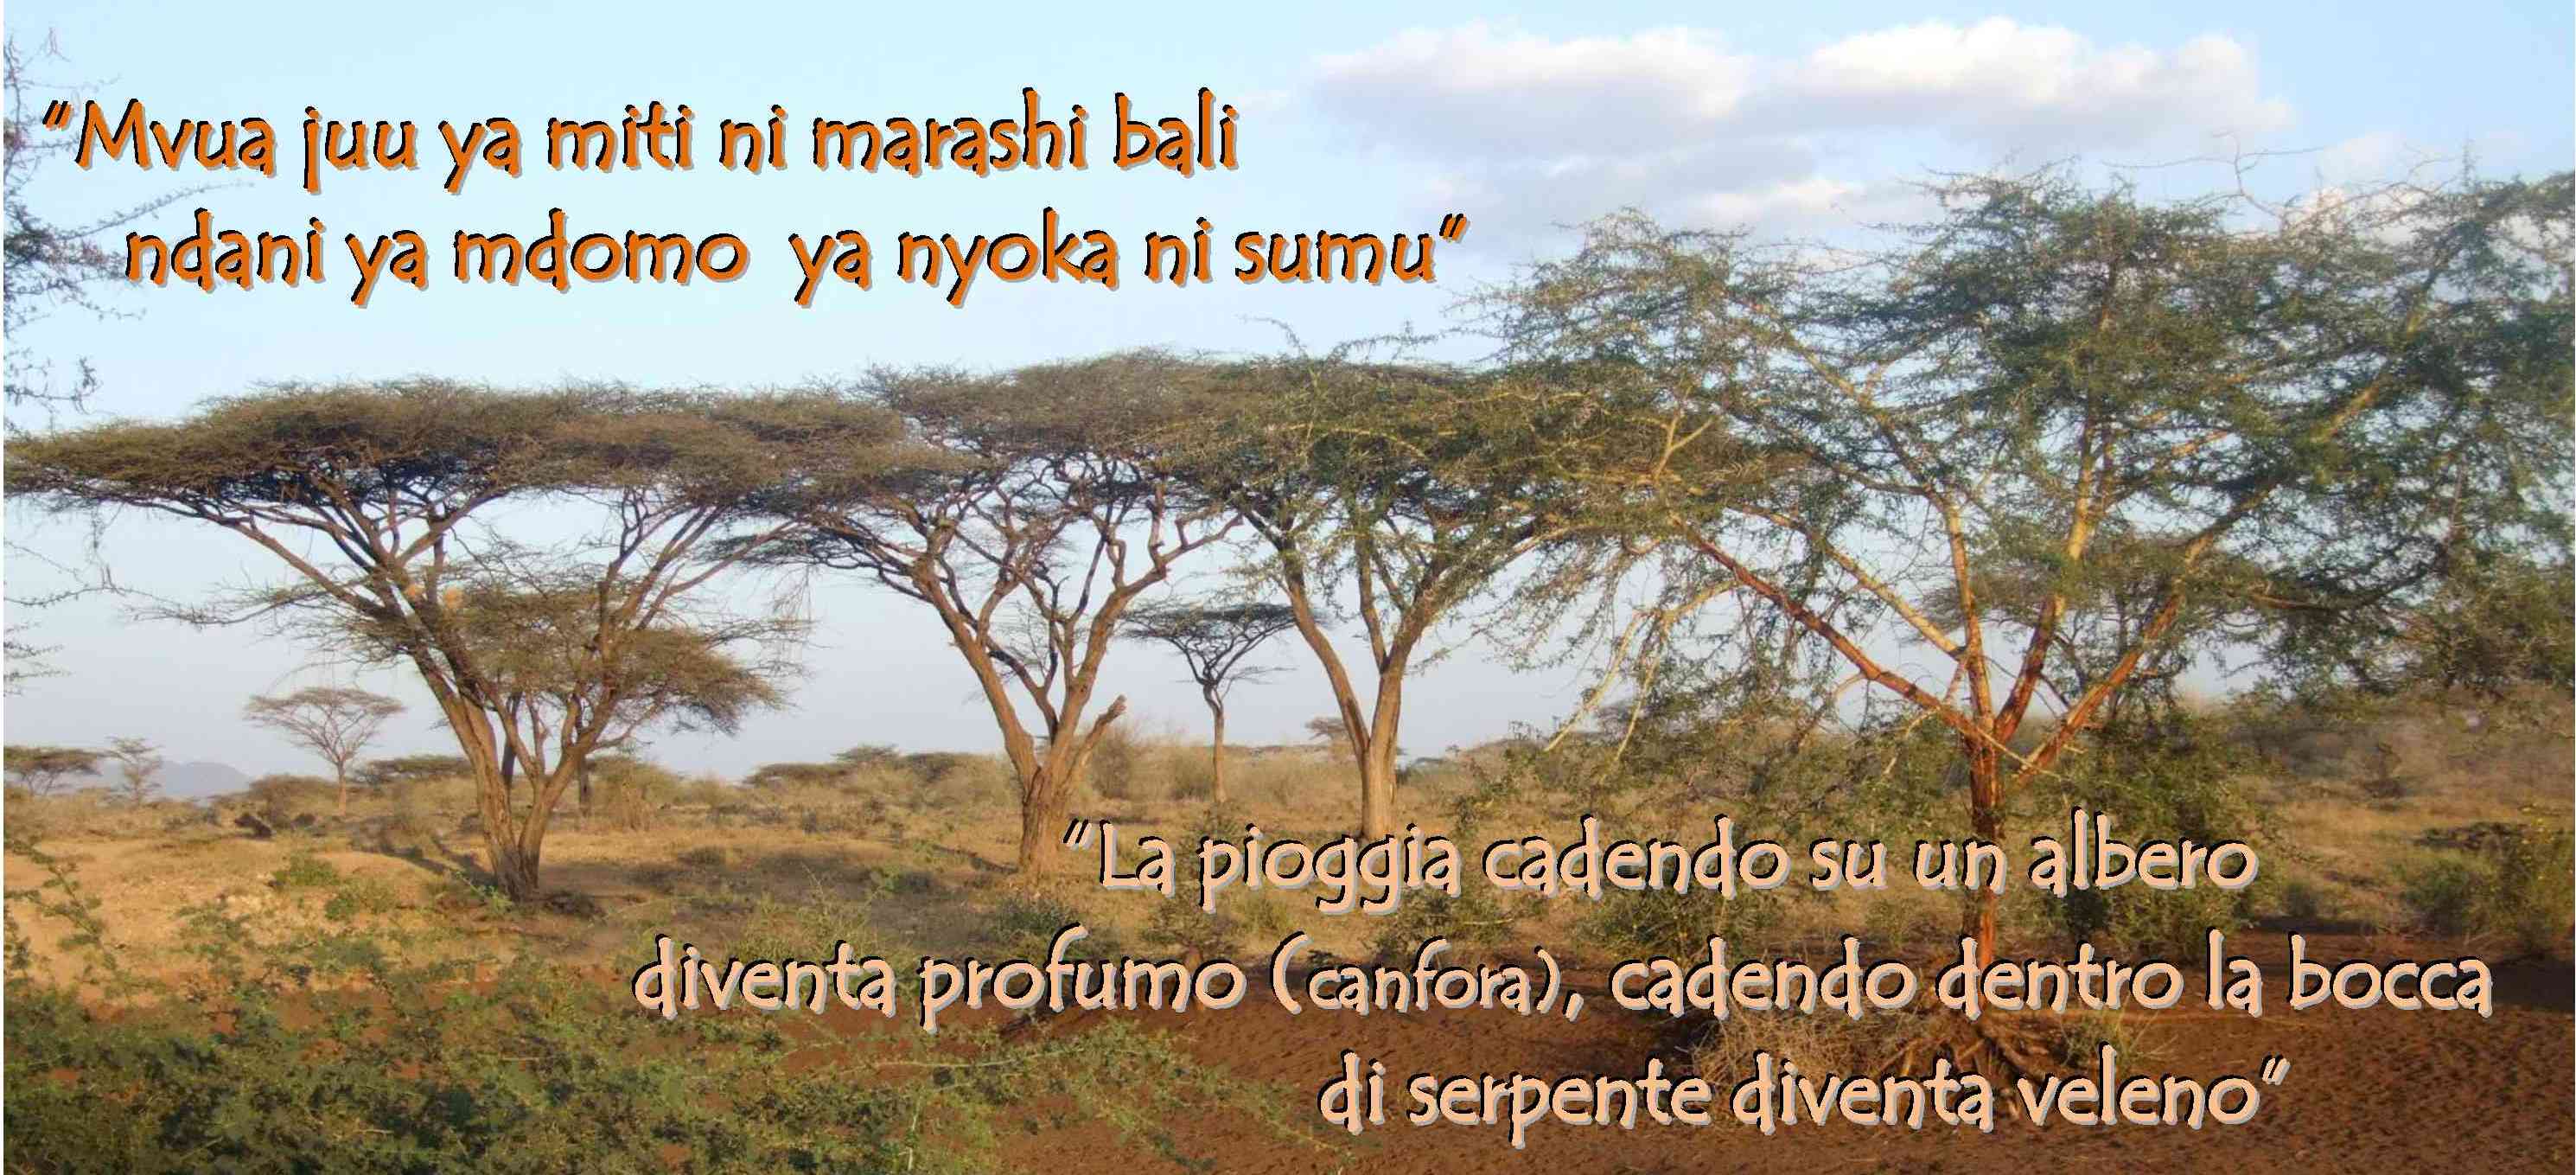 Proverbi Africani Africayetu